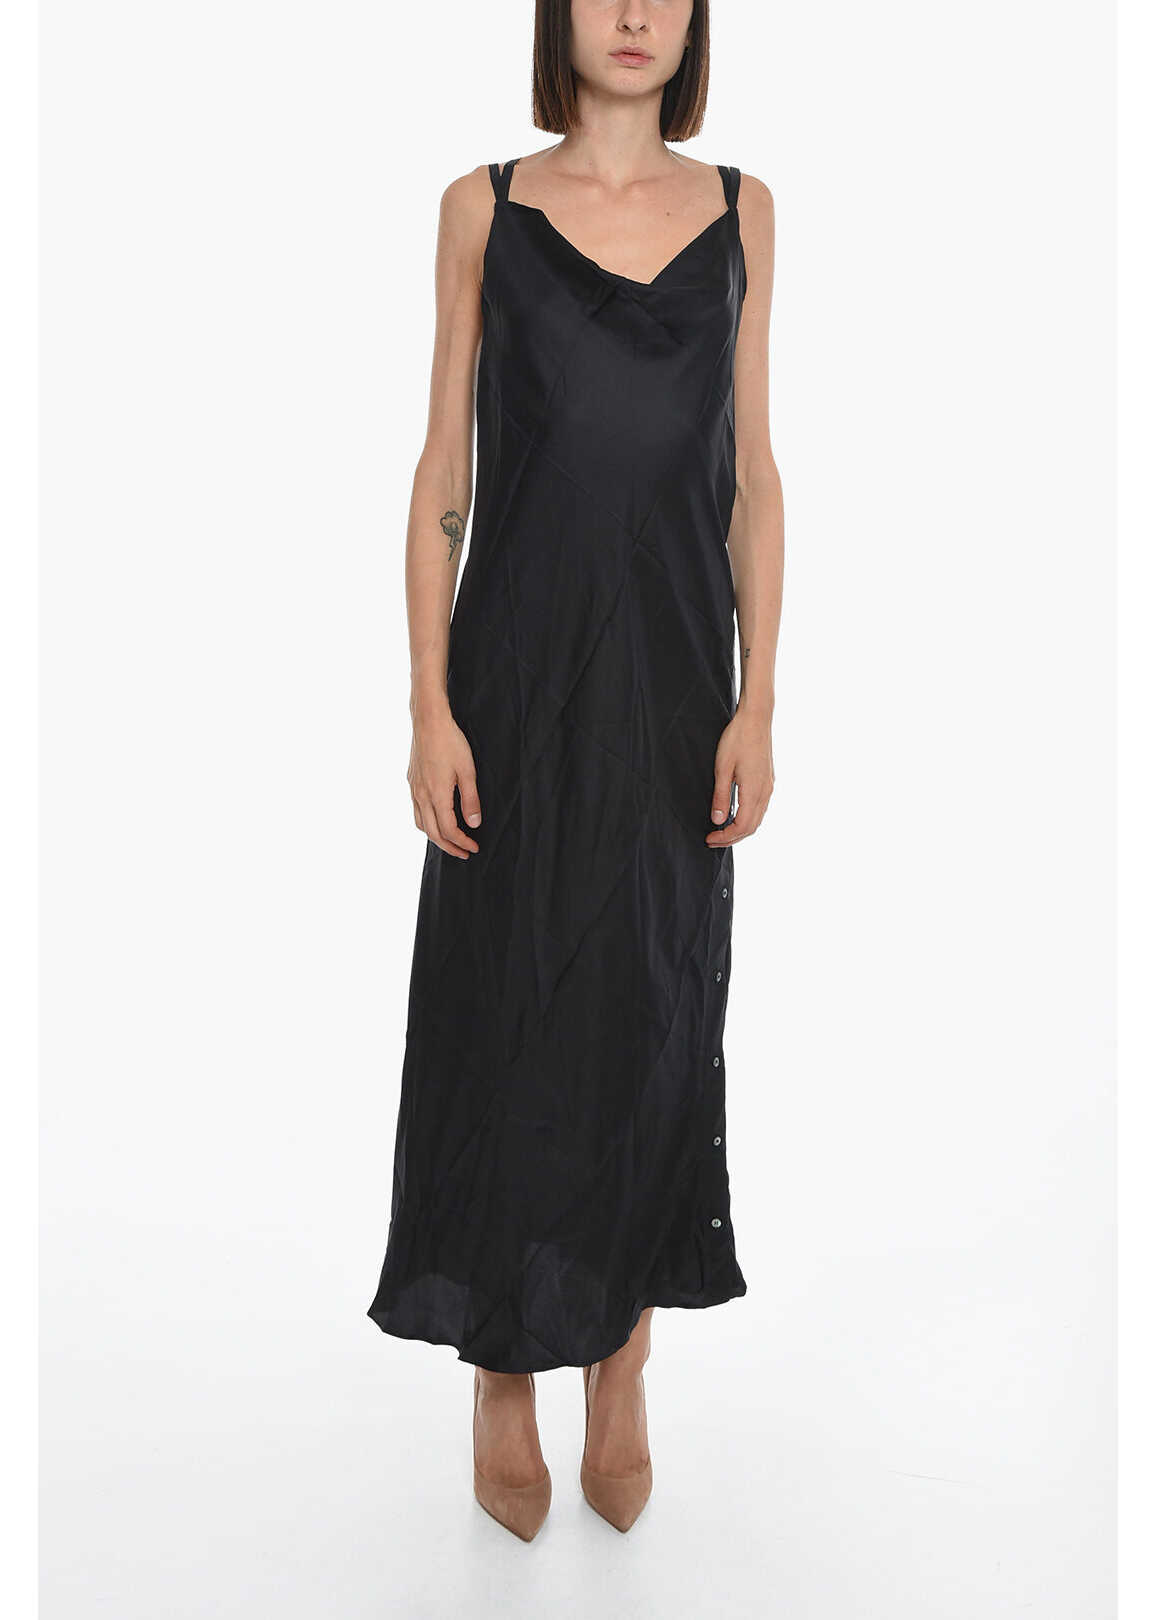 SETCHU Silk Slip Dress With Side Buttons Black